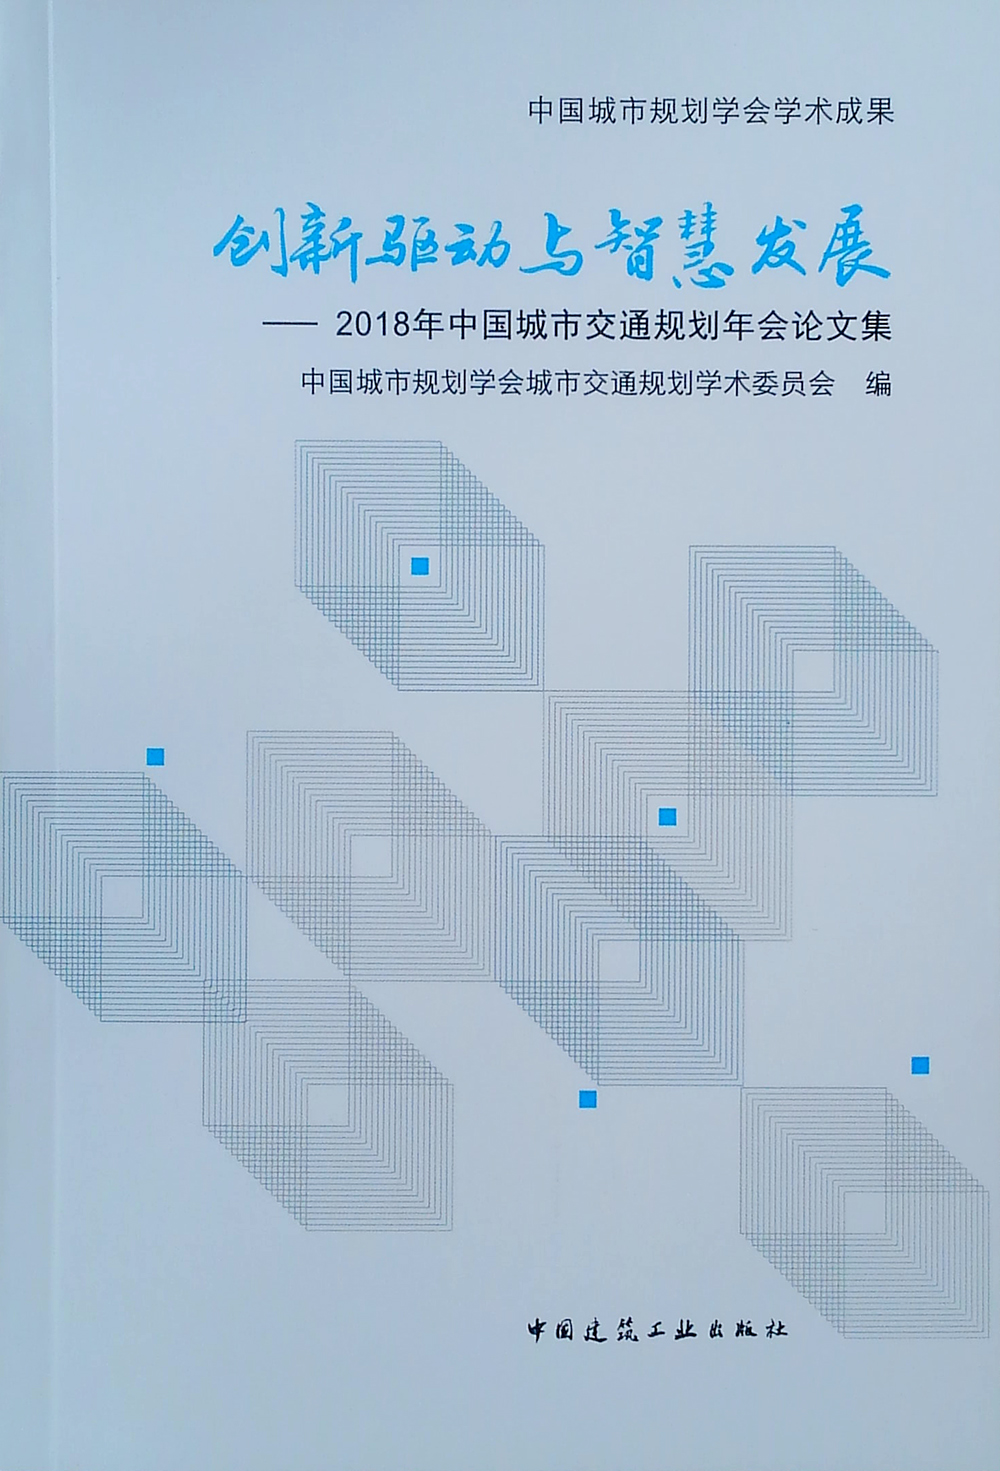 创新驱动与智慧发展——2018年中国城市交通规划年会论文集 kindle格式下载